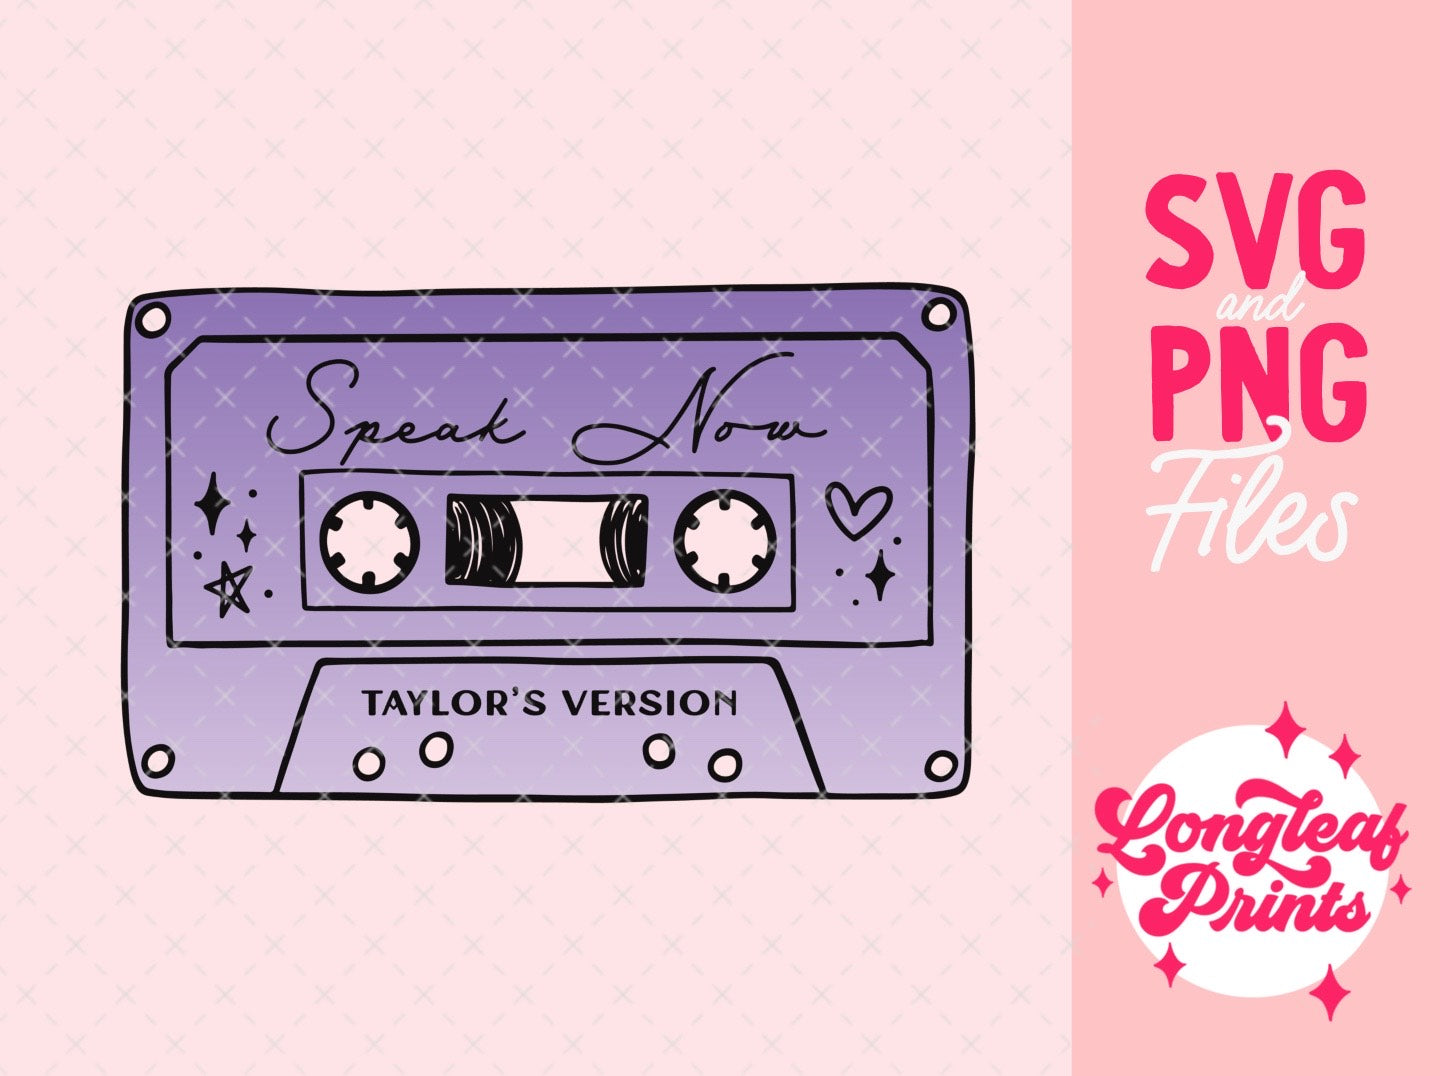 Speak Now Taylor's Version Mixtape SVG Digital Download Design File